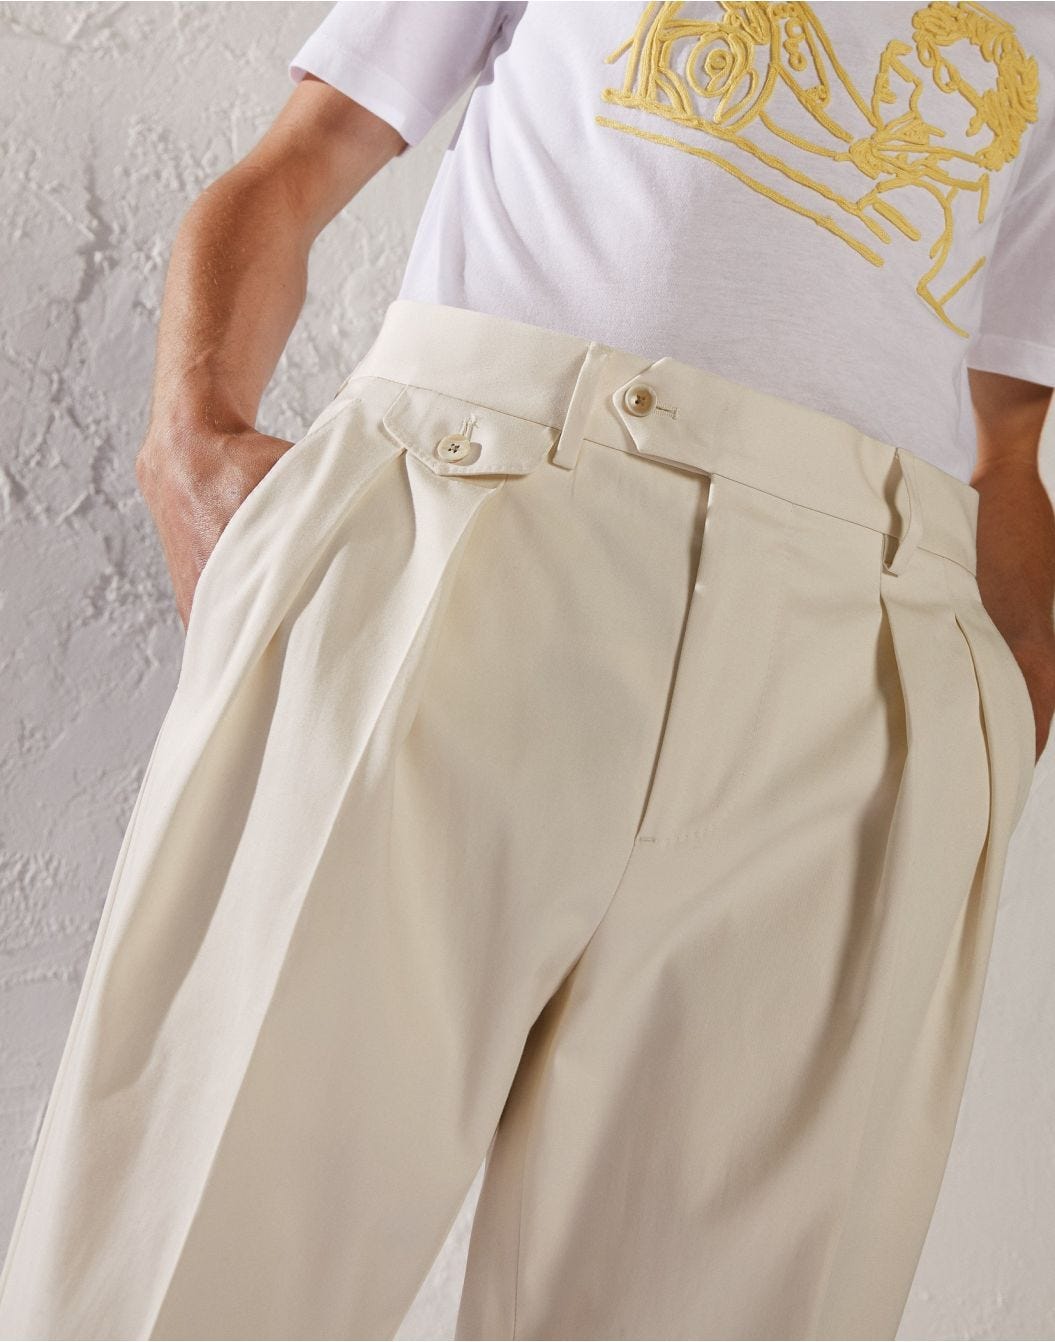 Cream trousers - Luigi Lardini capsule